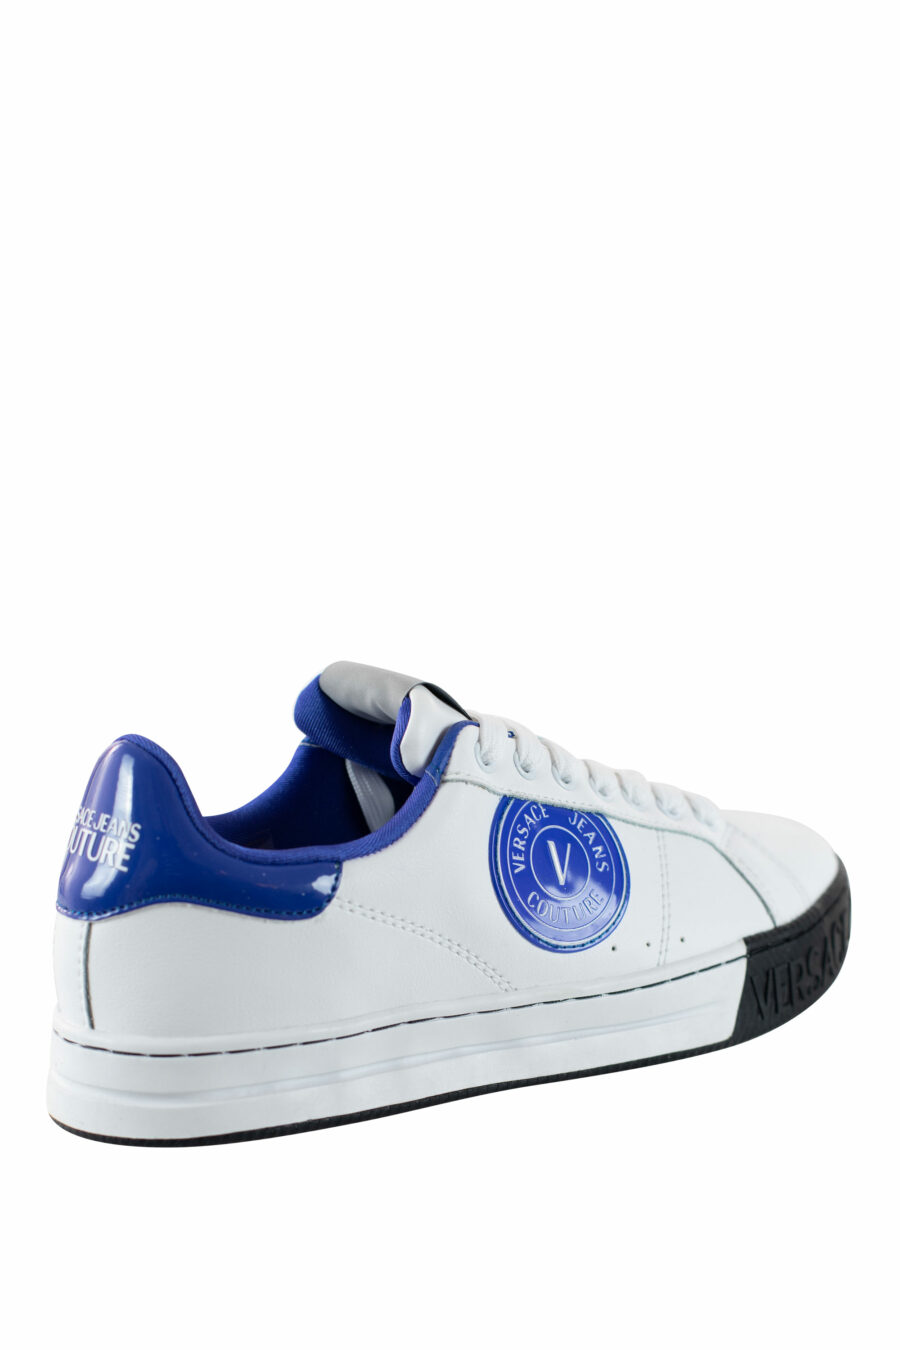 Baskets blanches avec logo bleu et circulaire - IMG 4503